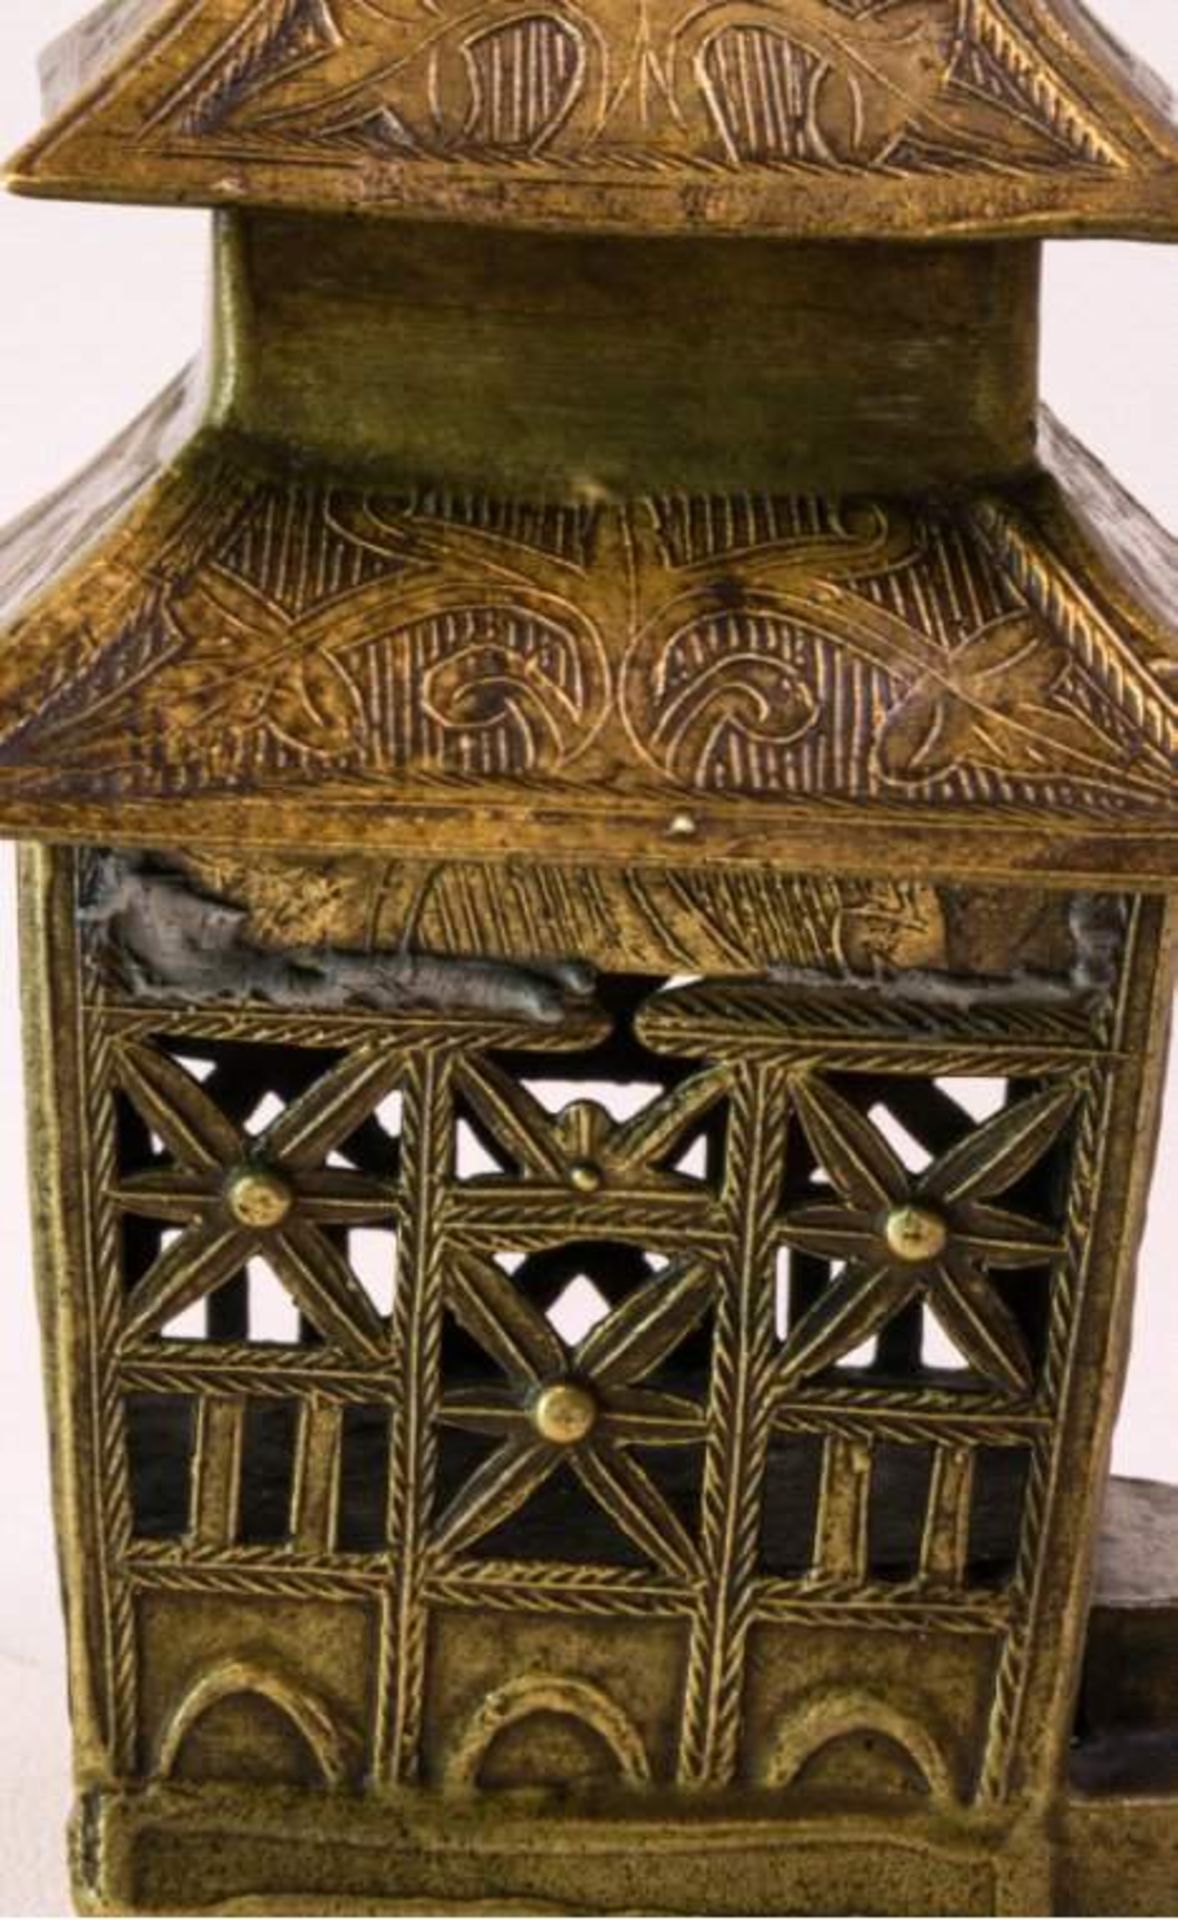 Weihrauchbehälter aus Bronze 19. Jh.In Form einer Pagode, durchbrochen gearbeitet,Ornamentdekor, - Bild 4 aus 4